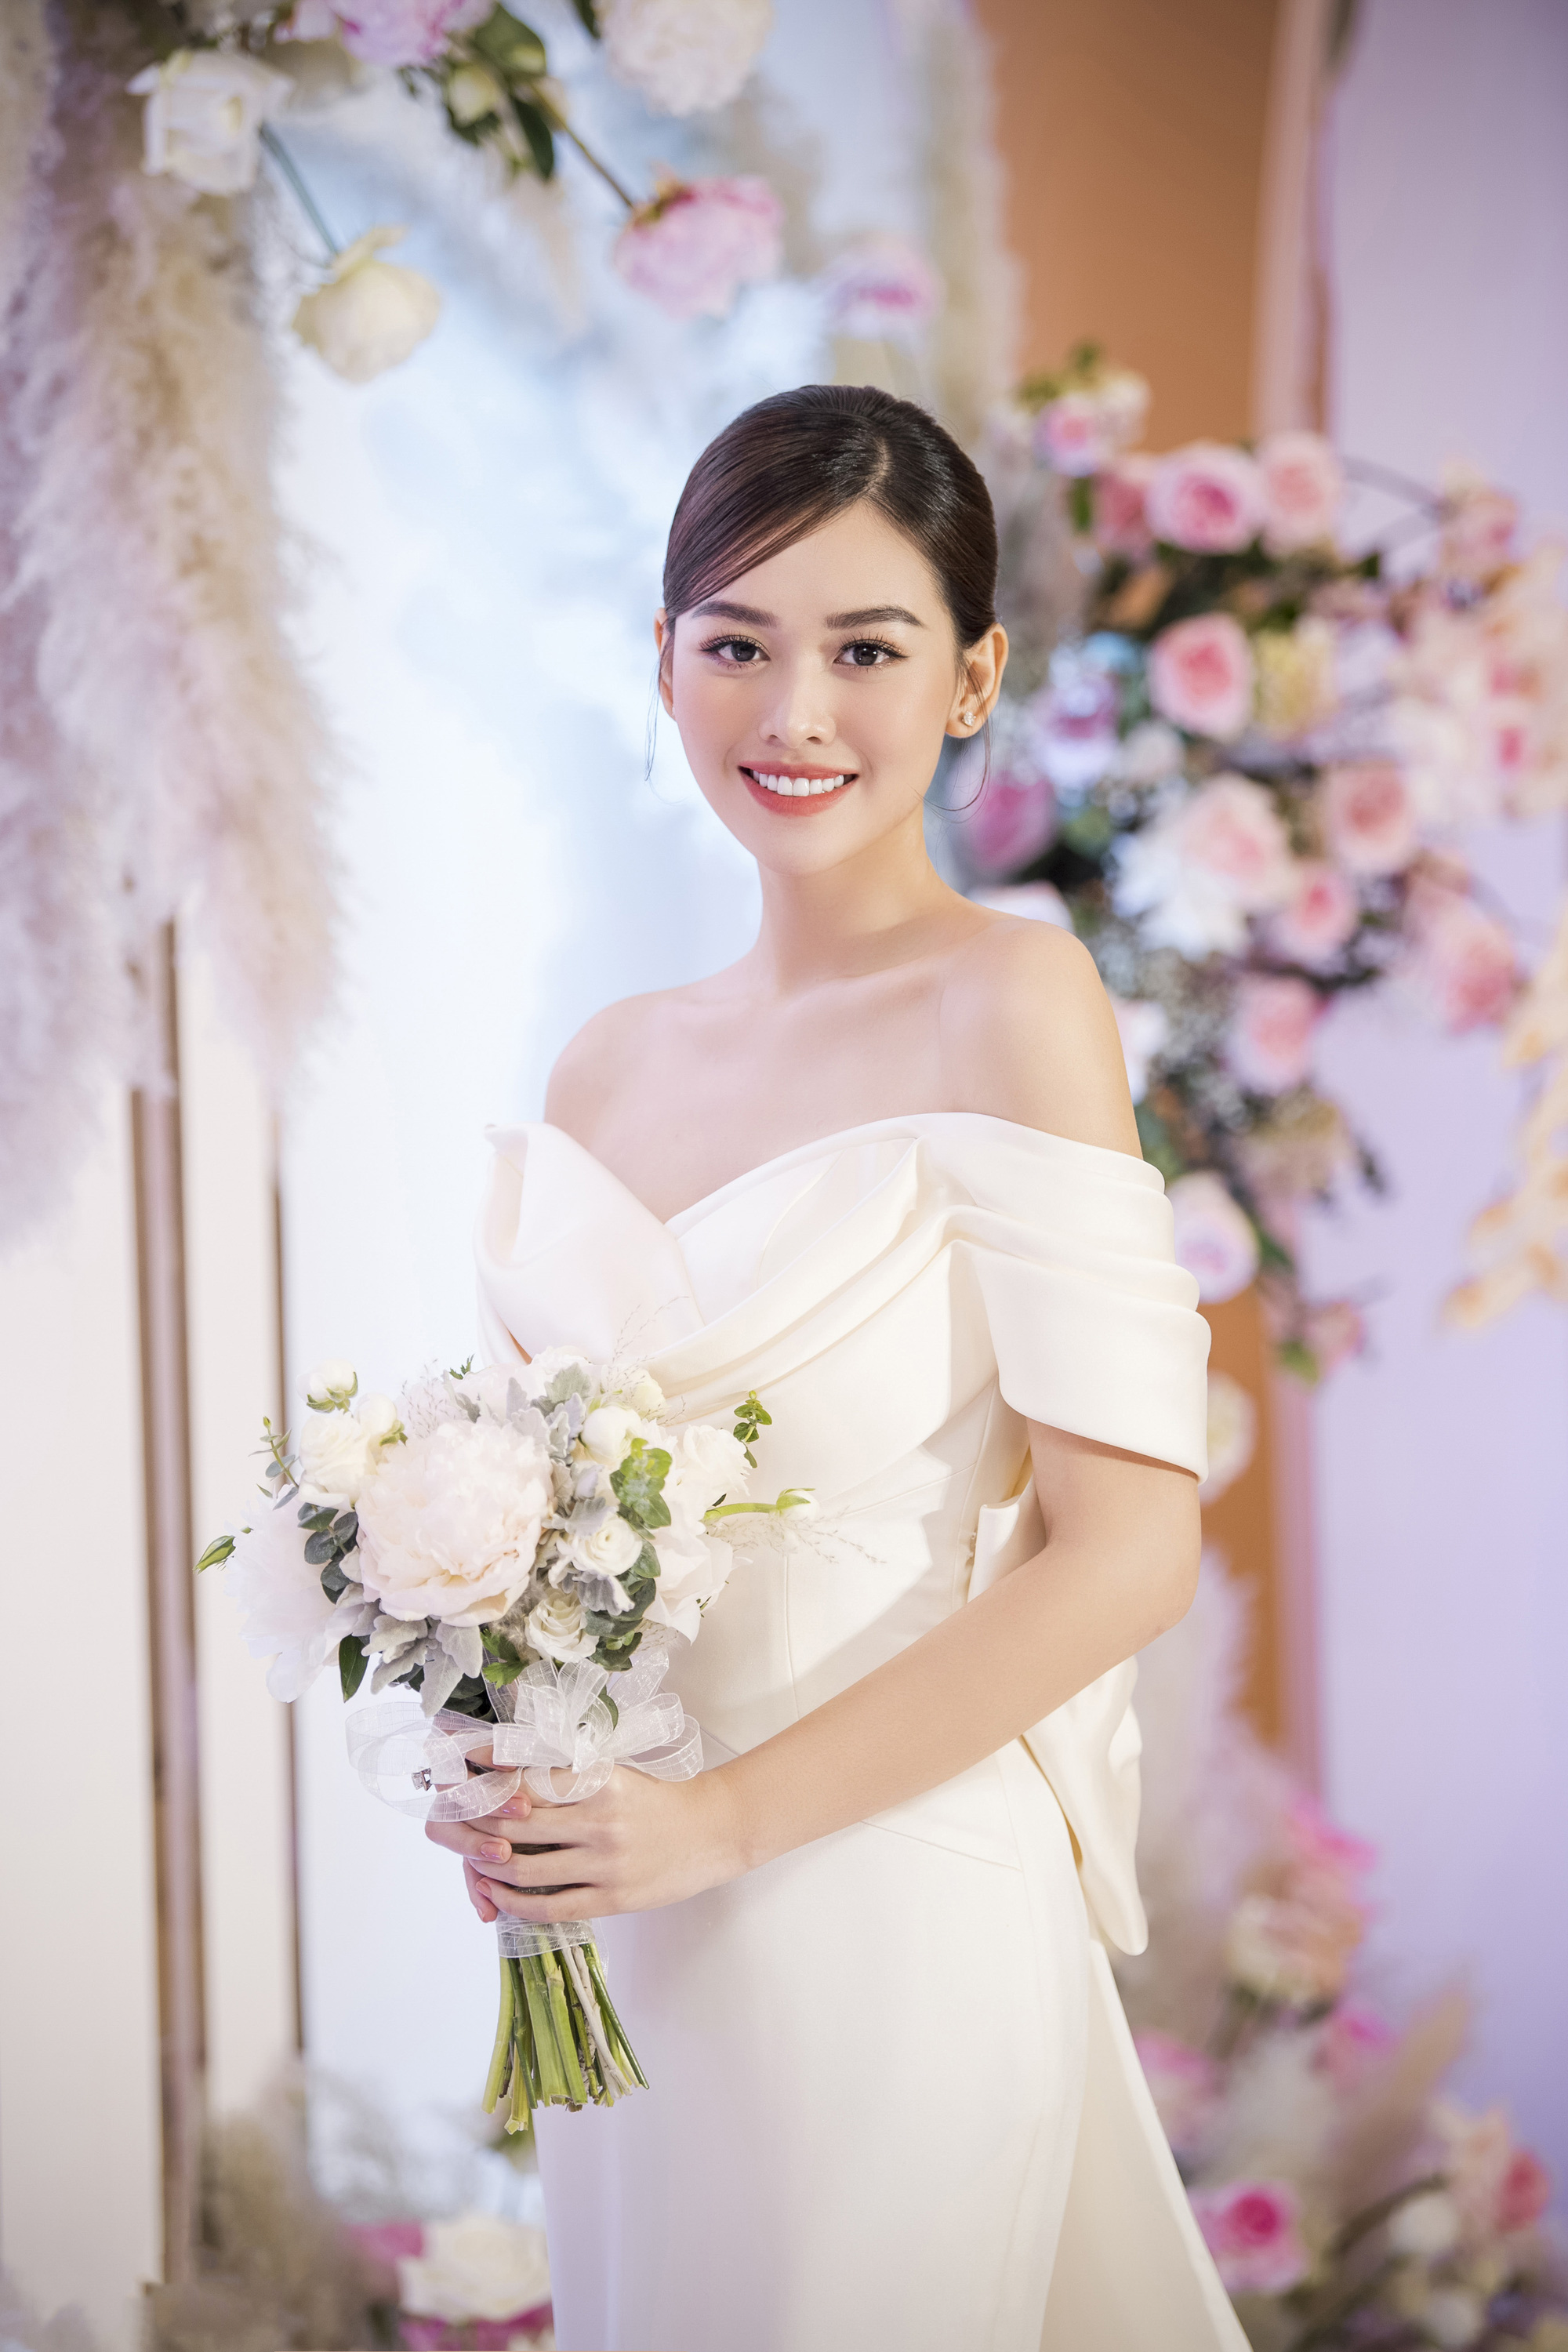 Tường San, cô gái điển trai và tài năng của nhóm nhạc HKT đã có một đám cưới cực kỳ ngọt ngào và lãng mạn cùng vợ mình. Hãy cùng xem những hình ảnh về lễ cưới của cả hai để cảm nhận được tình yêu và sự trân quý trong ngày trọng đại của họ.